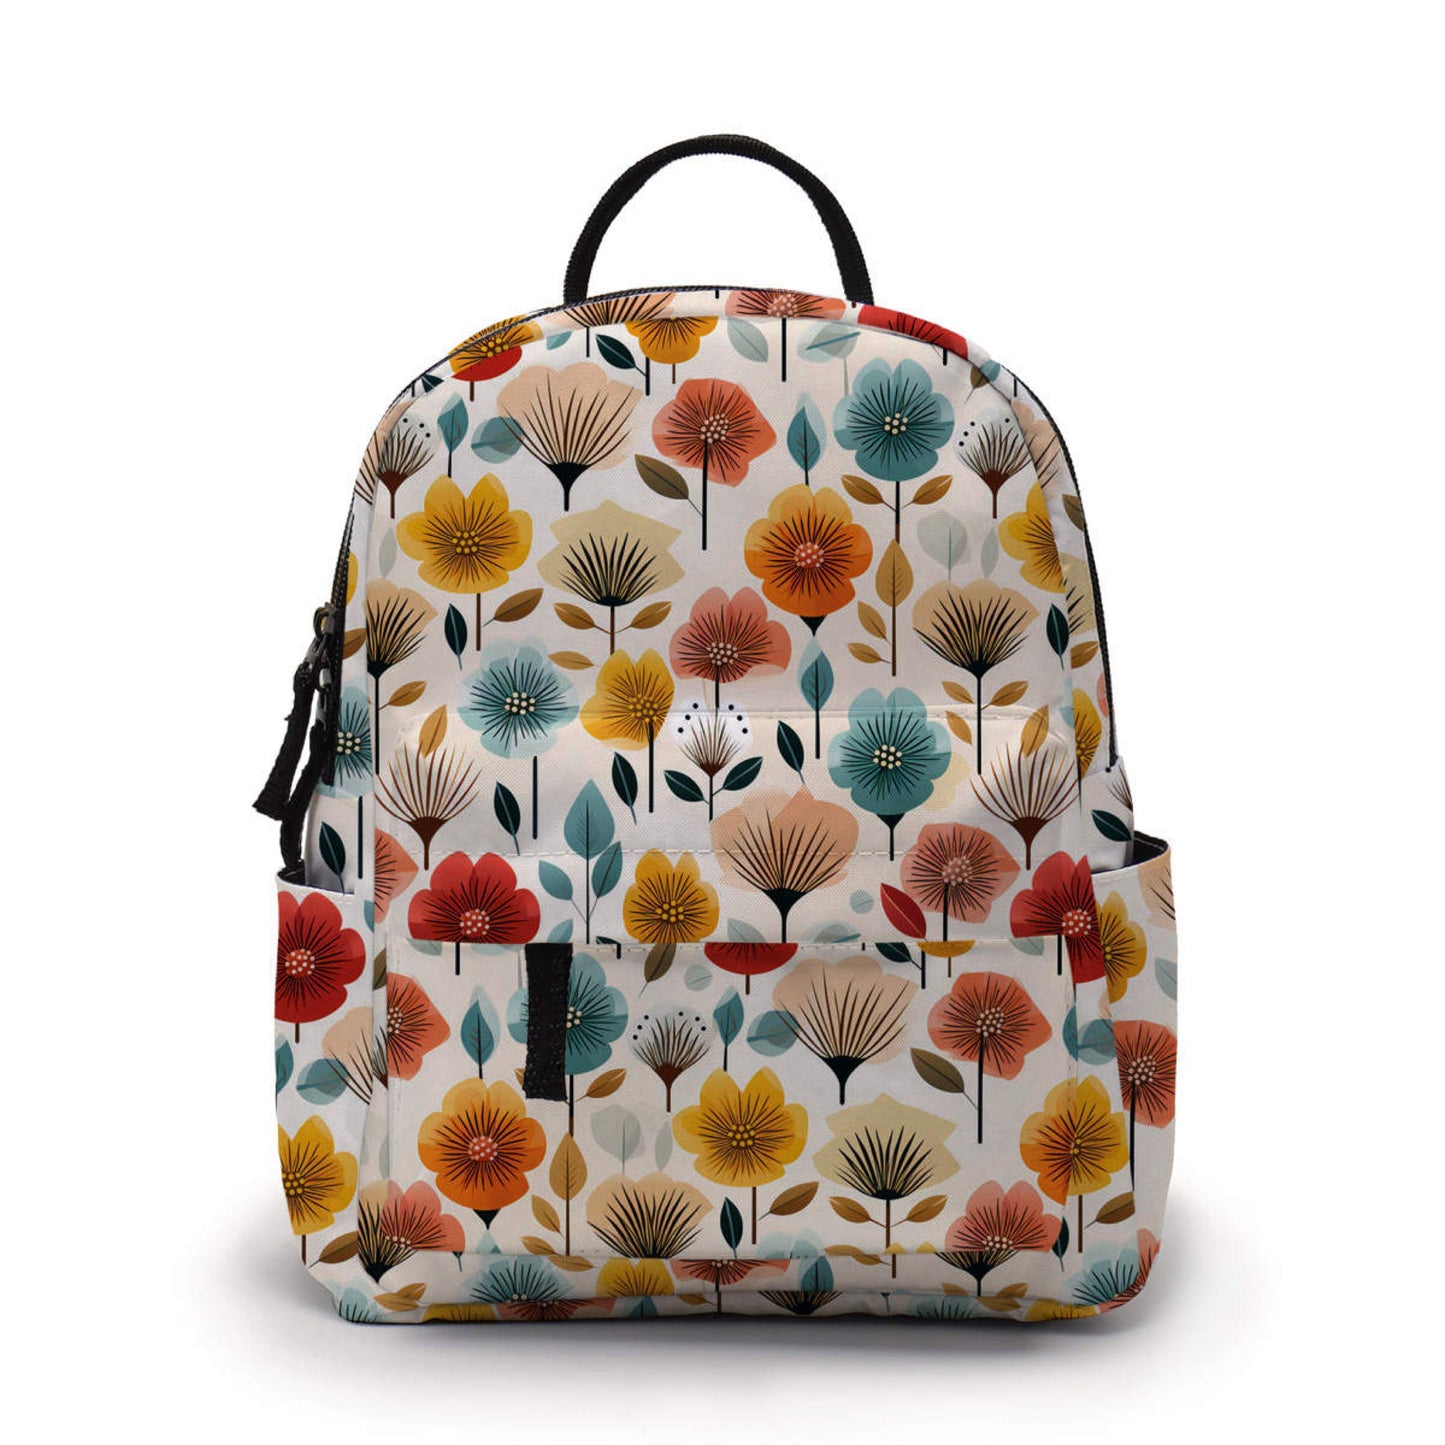 Mini Backpack - Floral Blooms Red Orange Blue